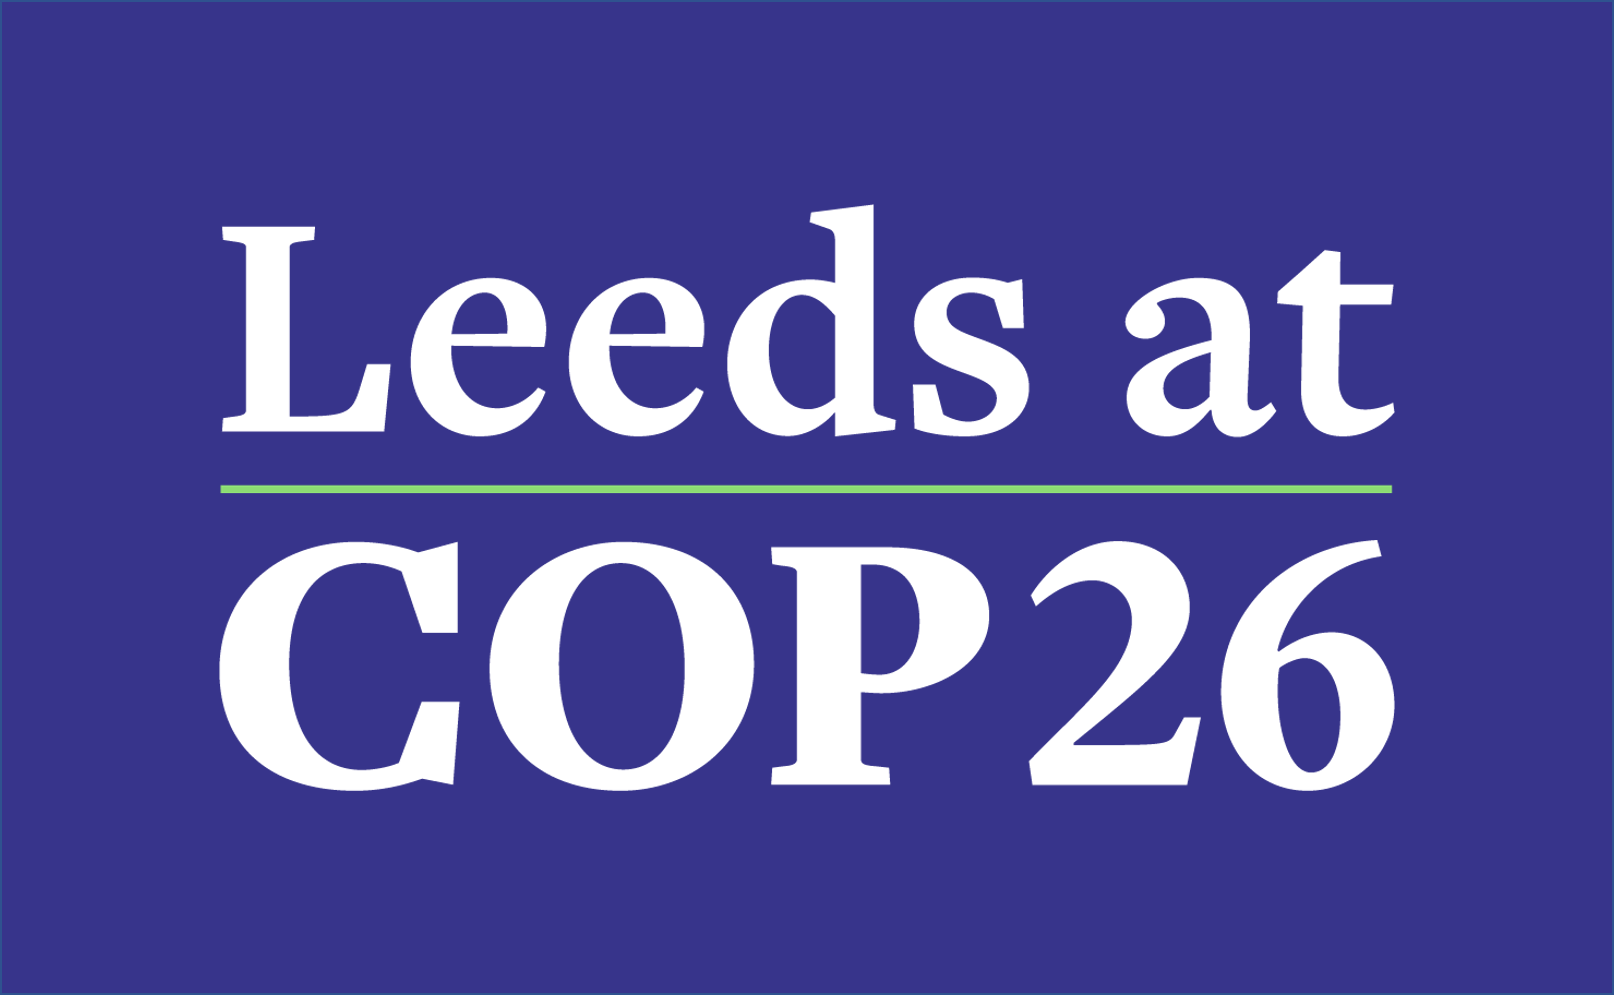 University of Leeds at COP26